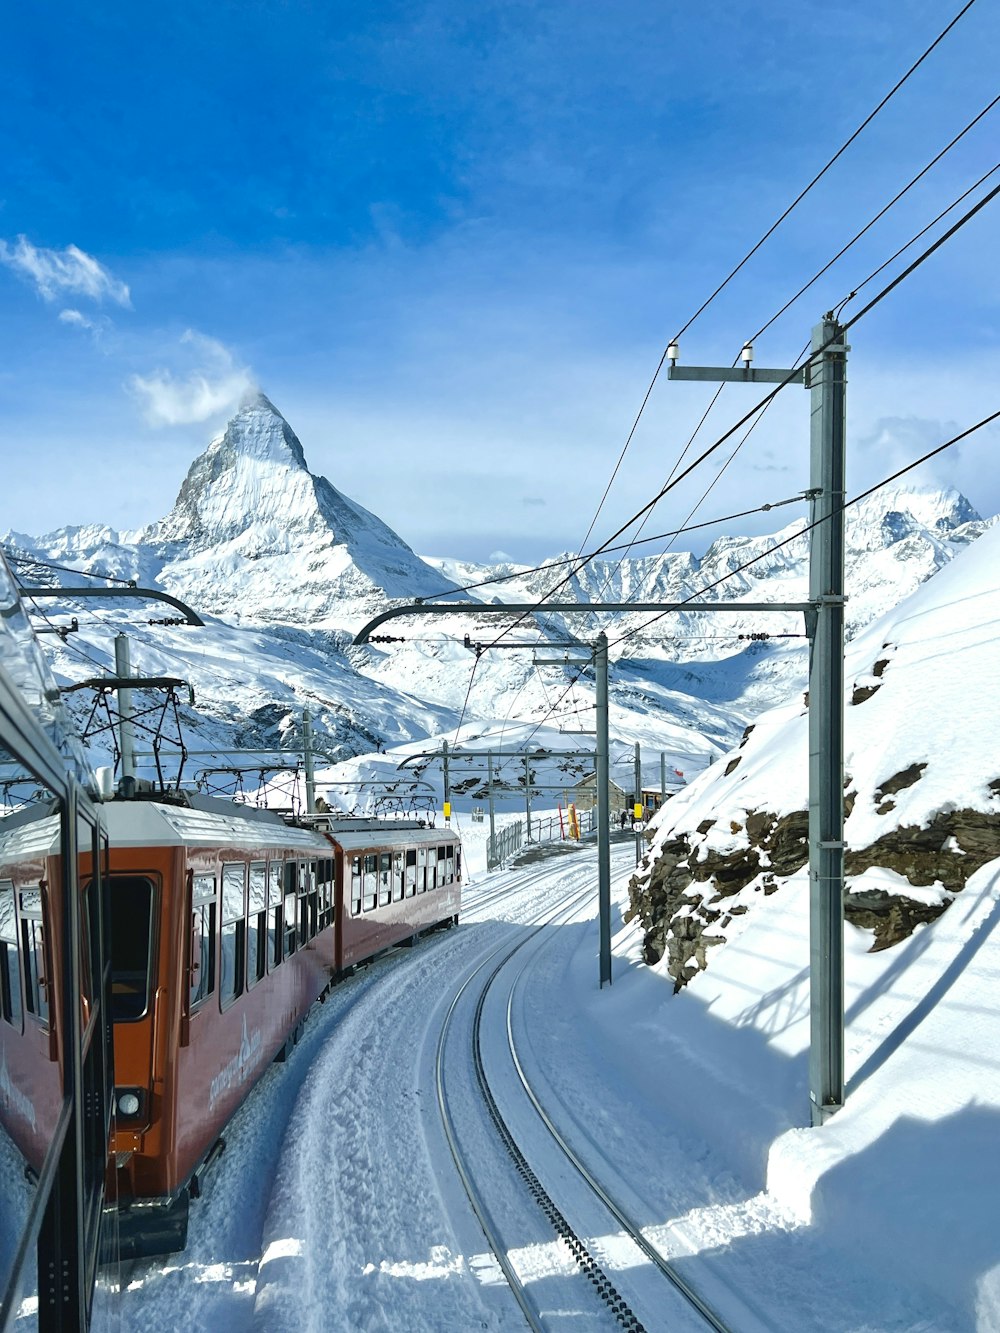 Ein roter Zug, der neben einem schneebedeckten Berg auf den Gleisen fährt